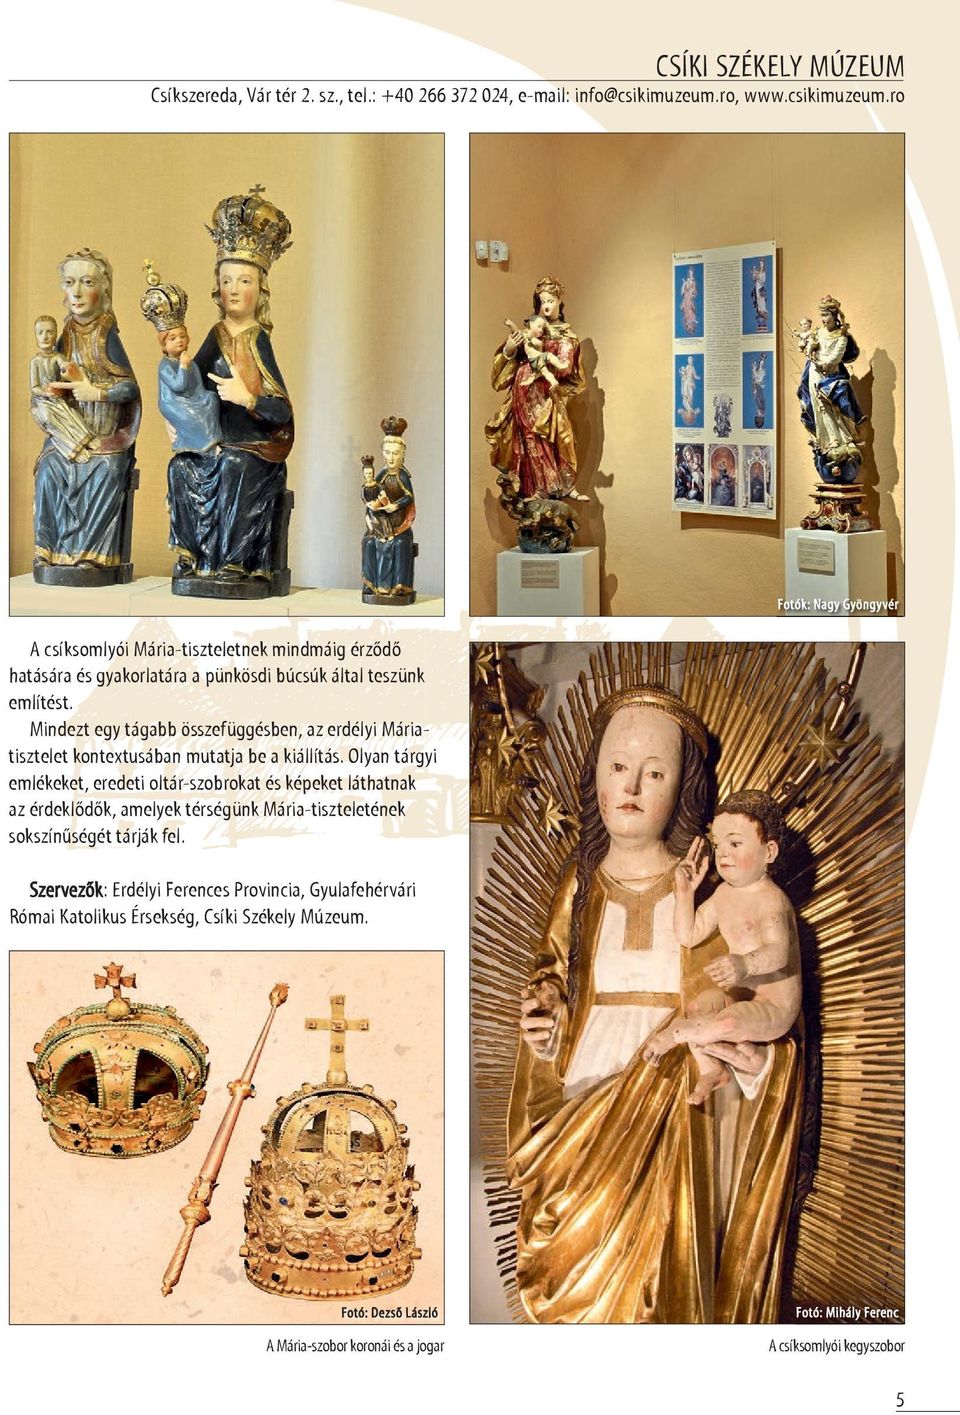 Mindezt egy tágabb összefüggésben, az erdélyi Máriatisztelet kontextusában mutatja be a kiállítás.